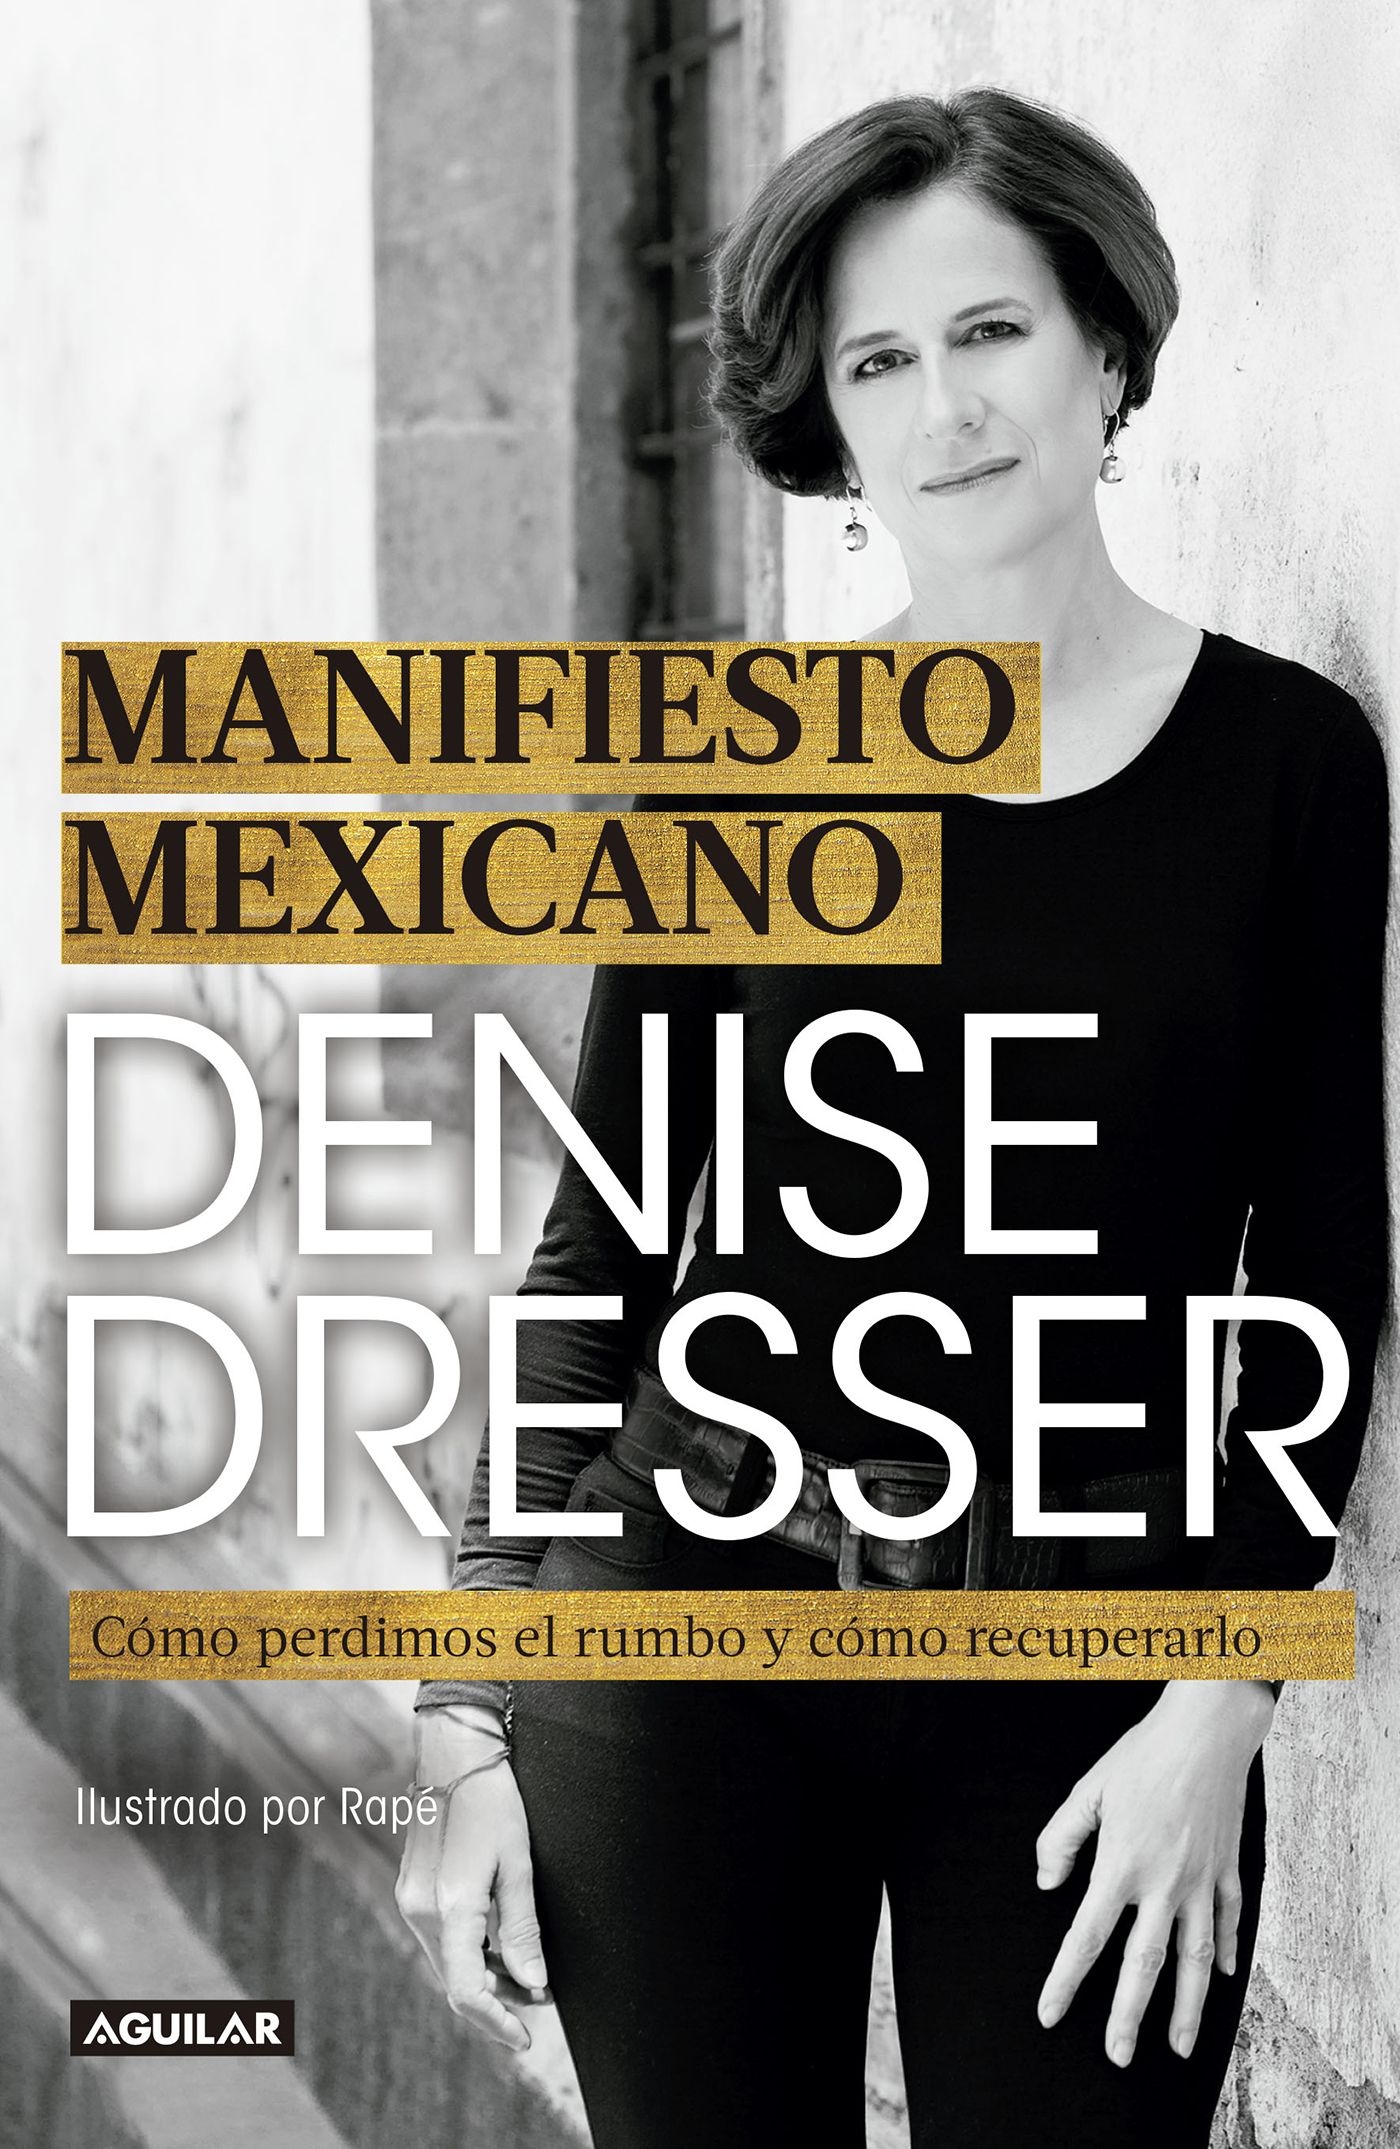 Denise Dresser Manifiesto mexicano. Cómo perdimos el rumbo y cómo recuperarlo